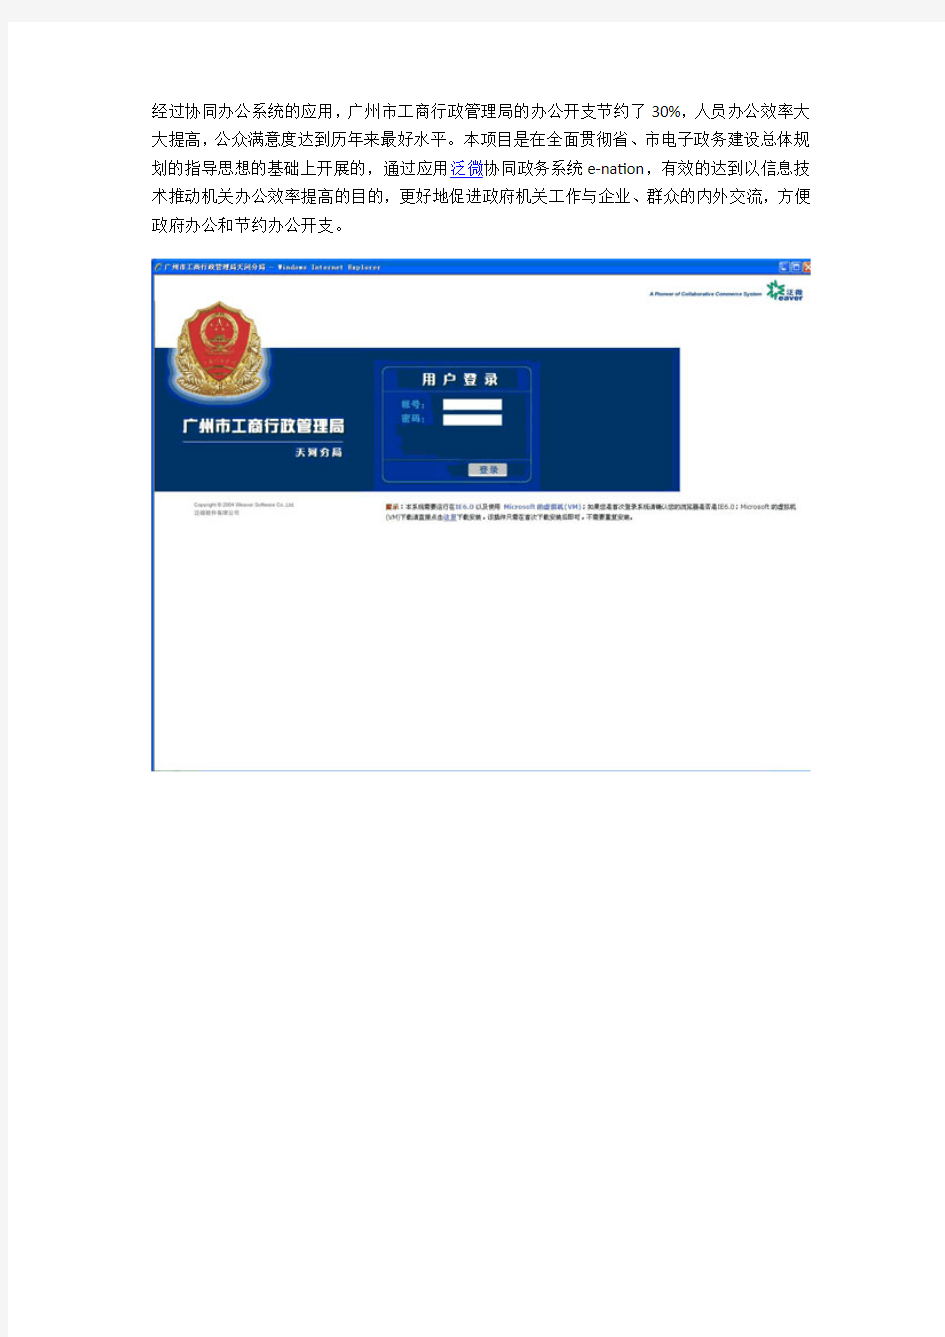 广州市工商行政管理局电子政务建设案例